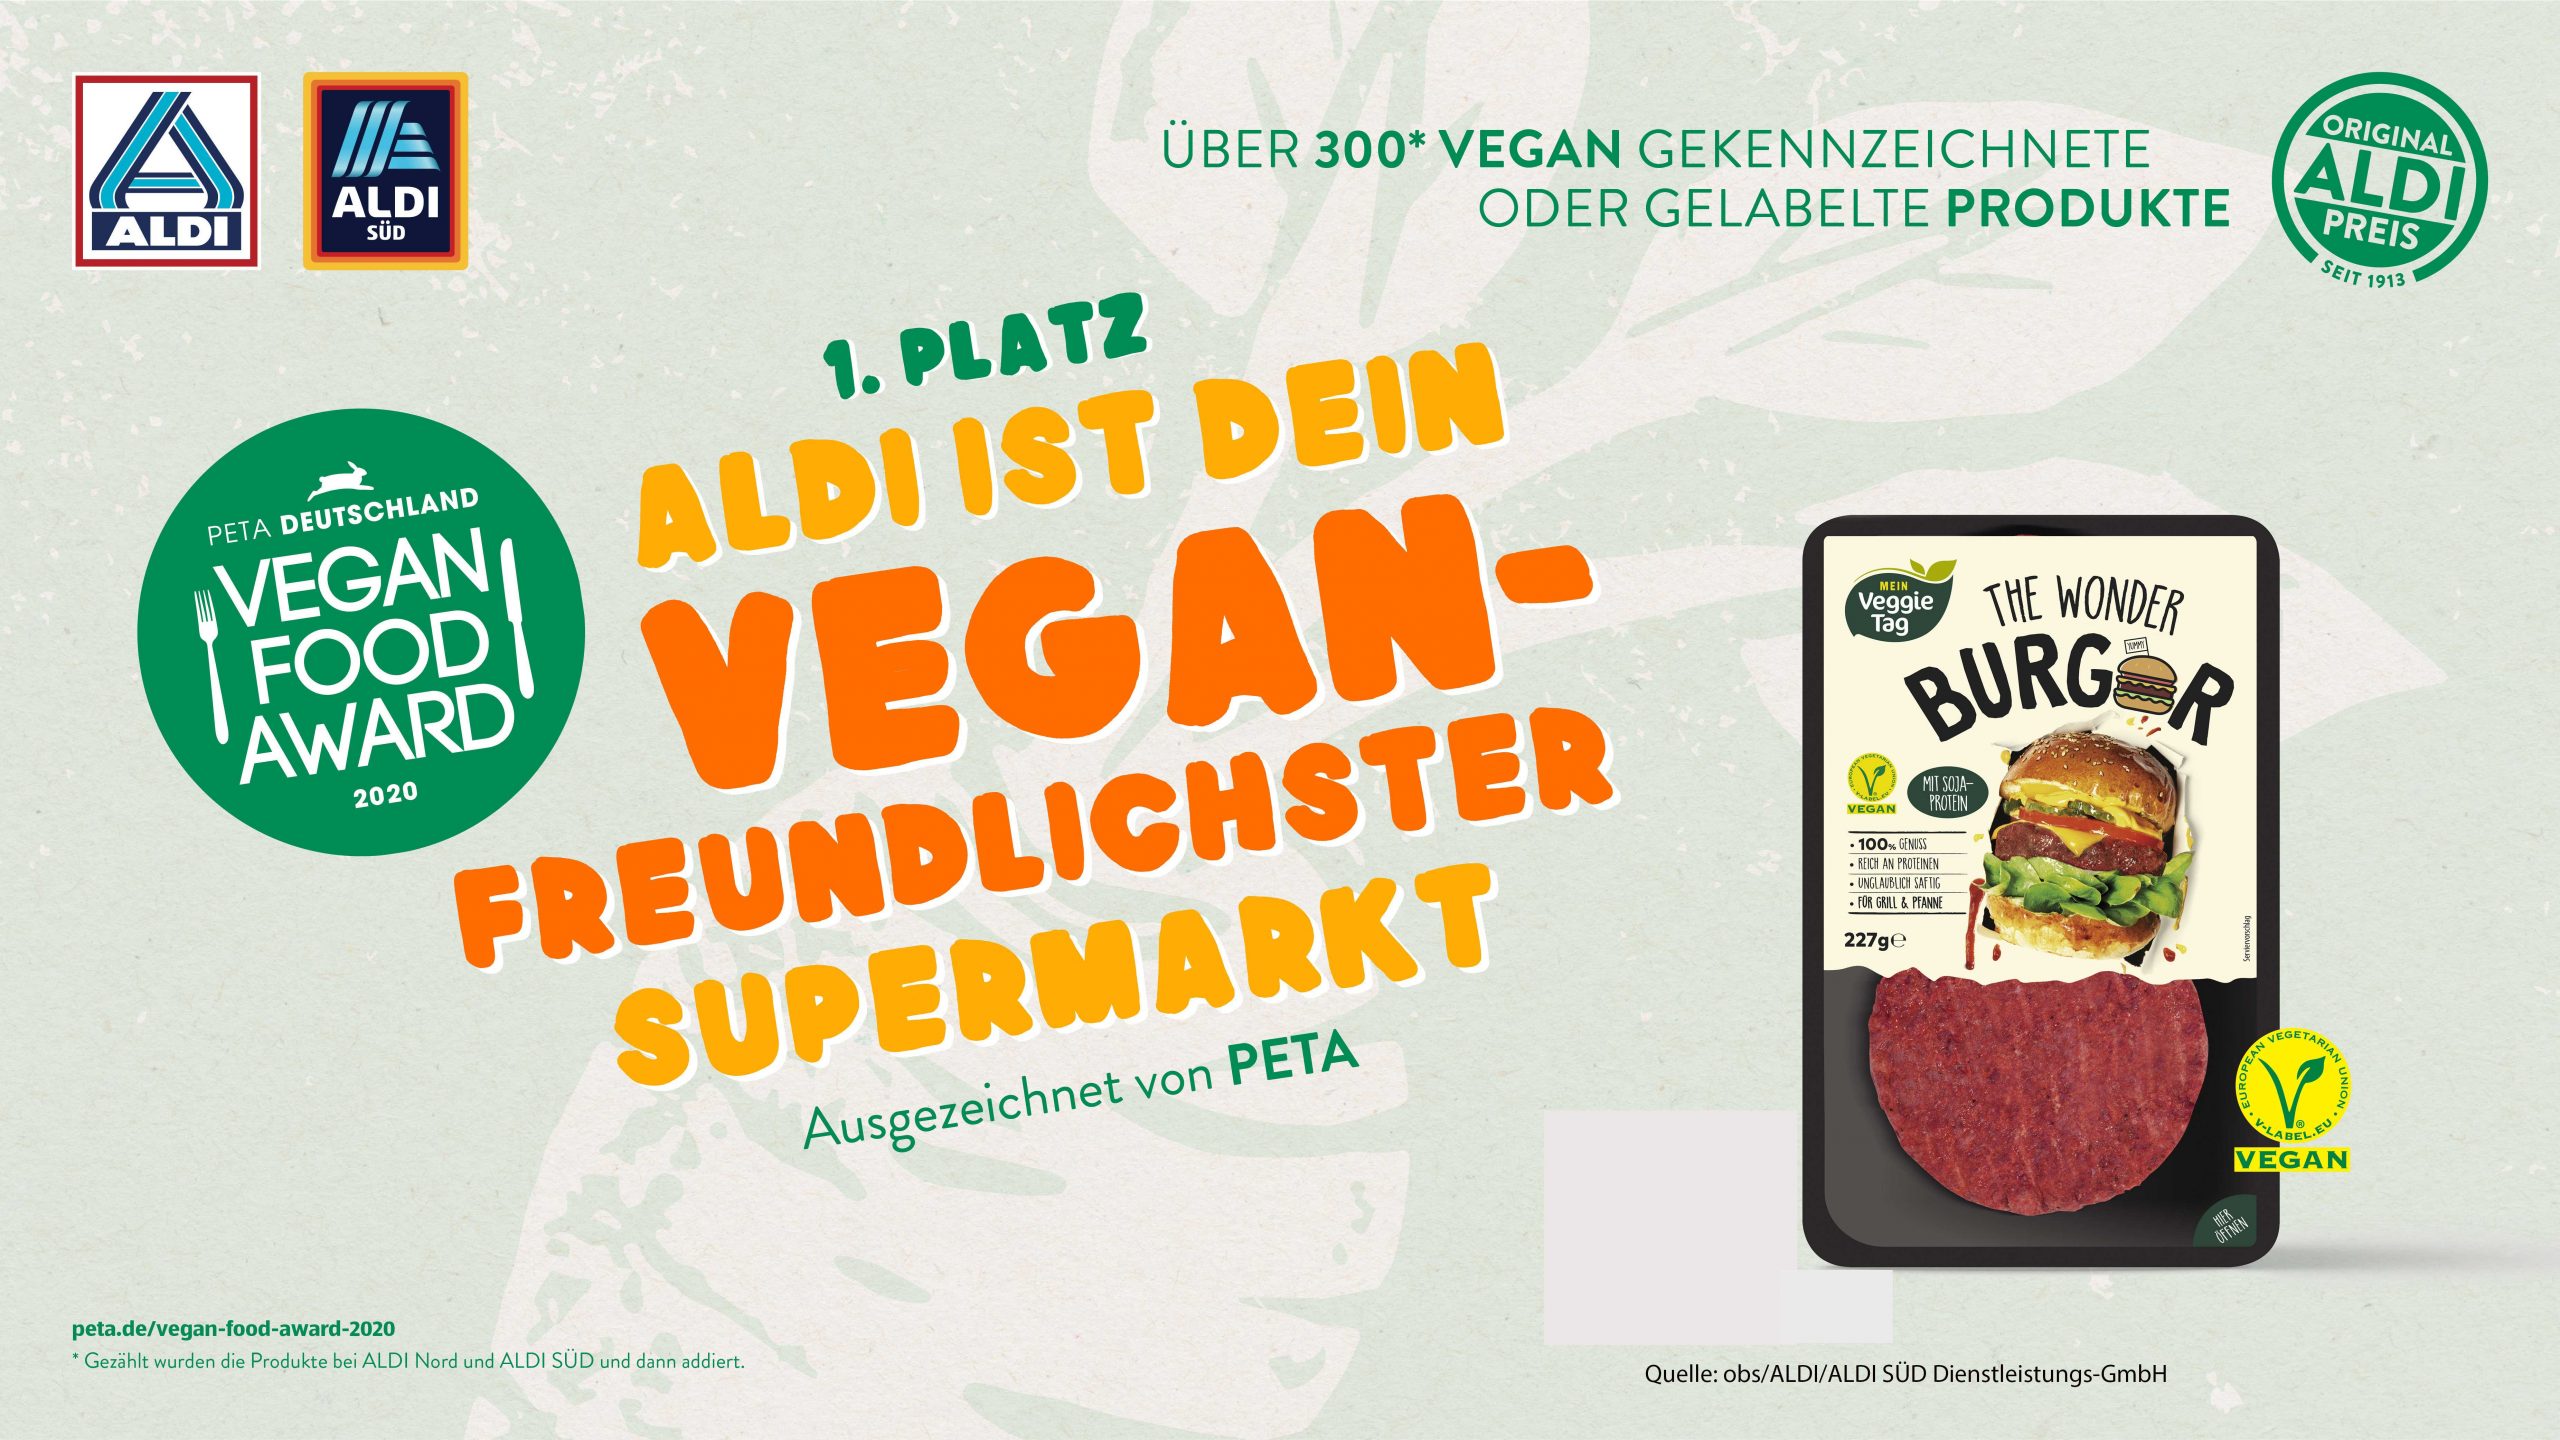 ALDI ist "Vegan freundlichster Supermarkt"